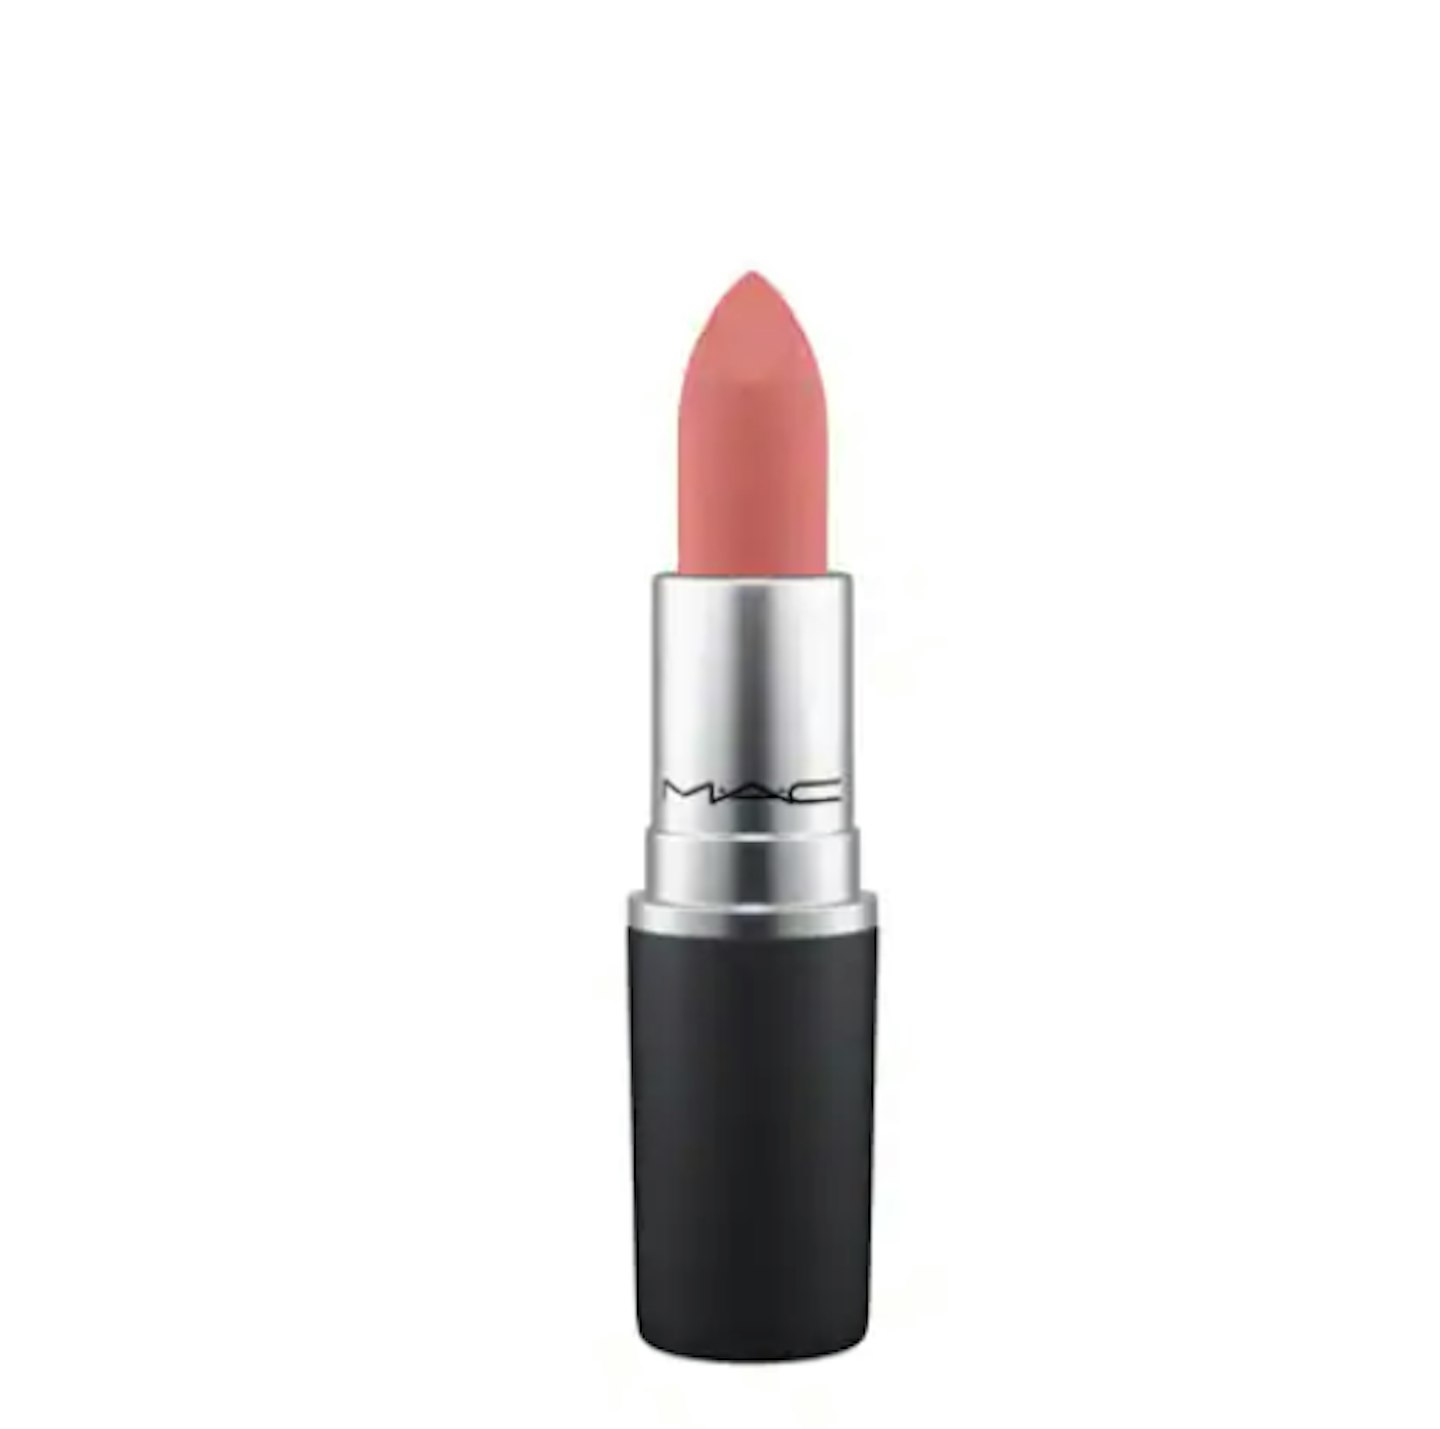 Lorna Luxe MAC Cosmetics Powder Kiss Lipstick